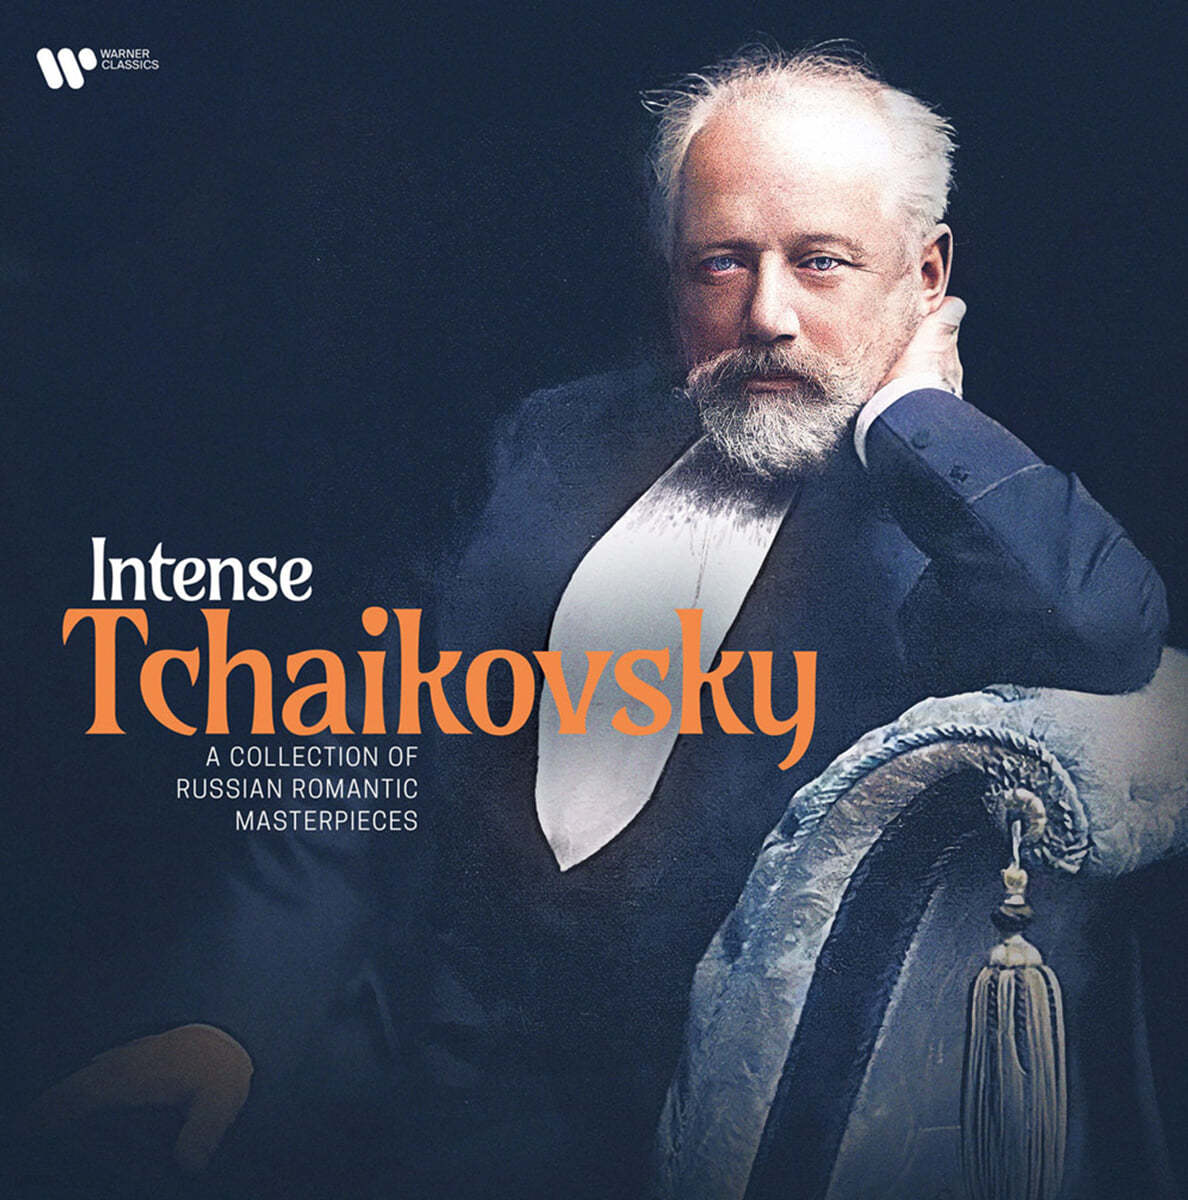 워너 클래식스 레이블 차이코프스키 명연주집 (Intense Tchaikovsky: A Collection Of Russian Romantic Masterpieces) [LP]